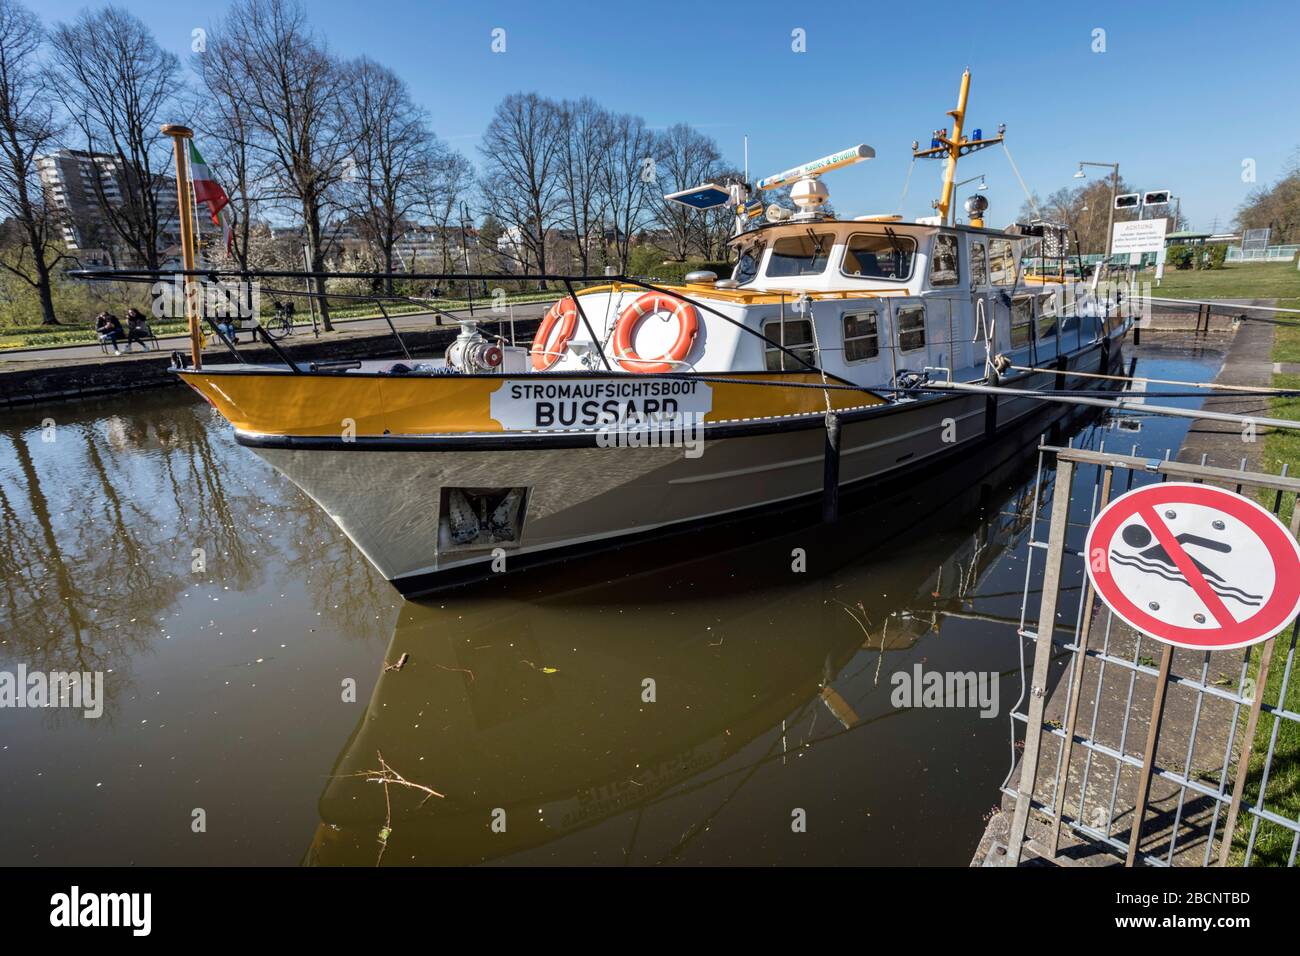 Ufficiale barca da lavoro Bussard il governo distrettuale Foto Stock